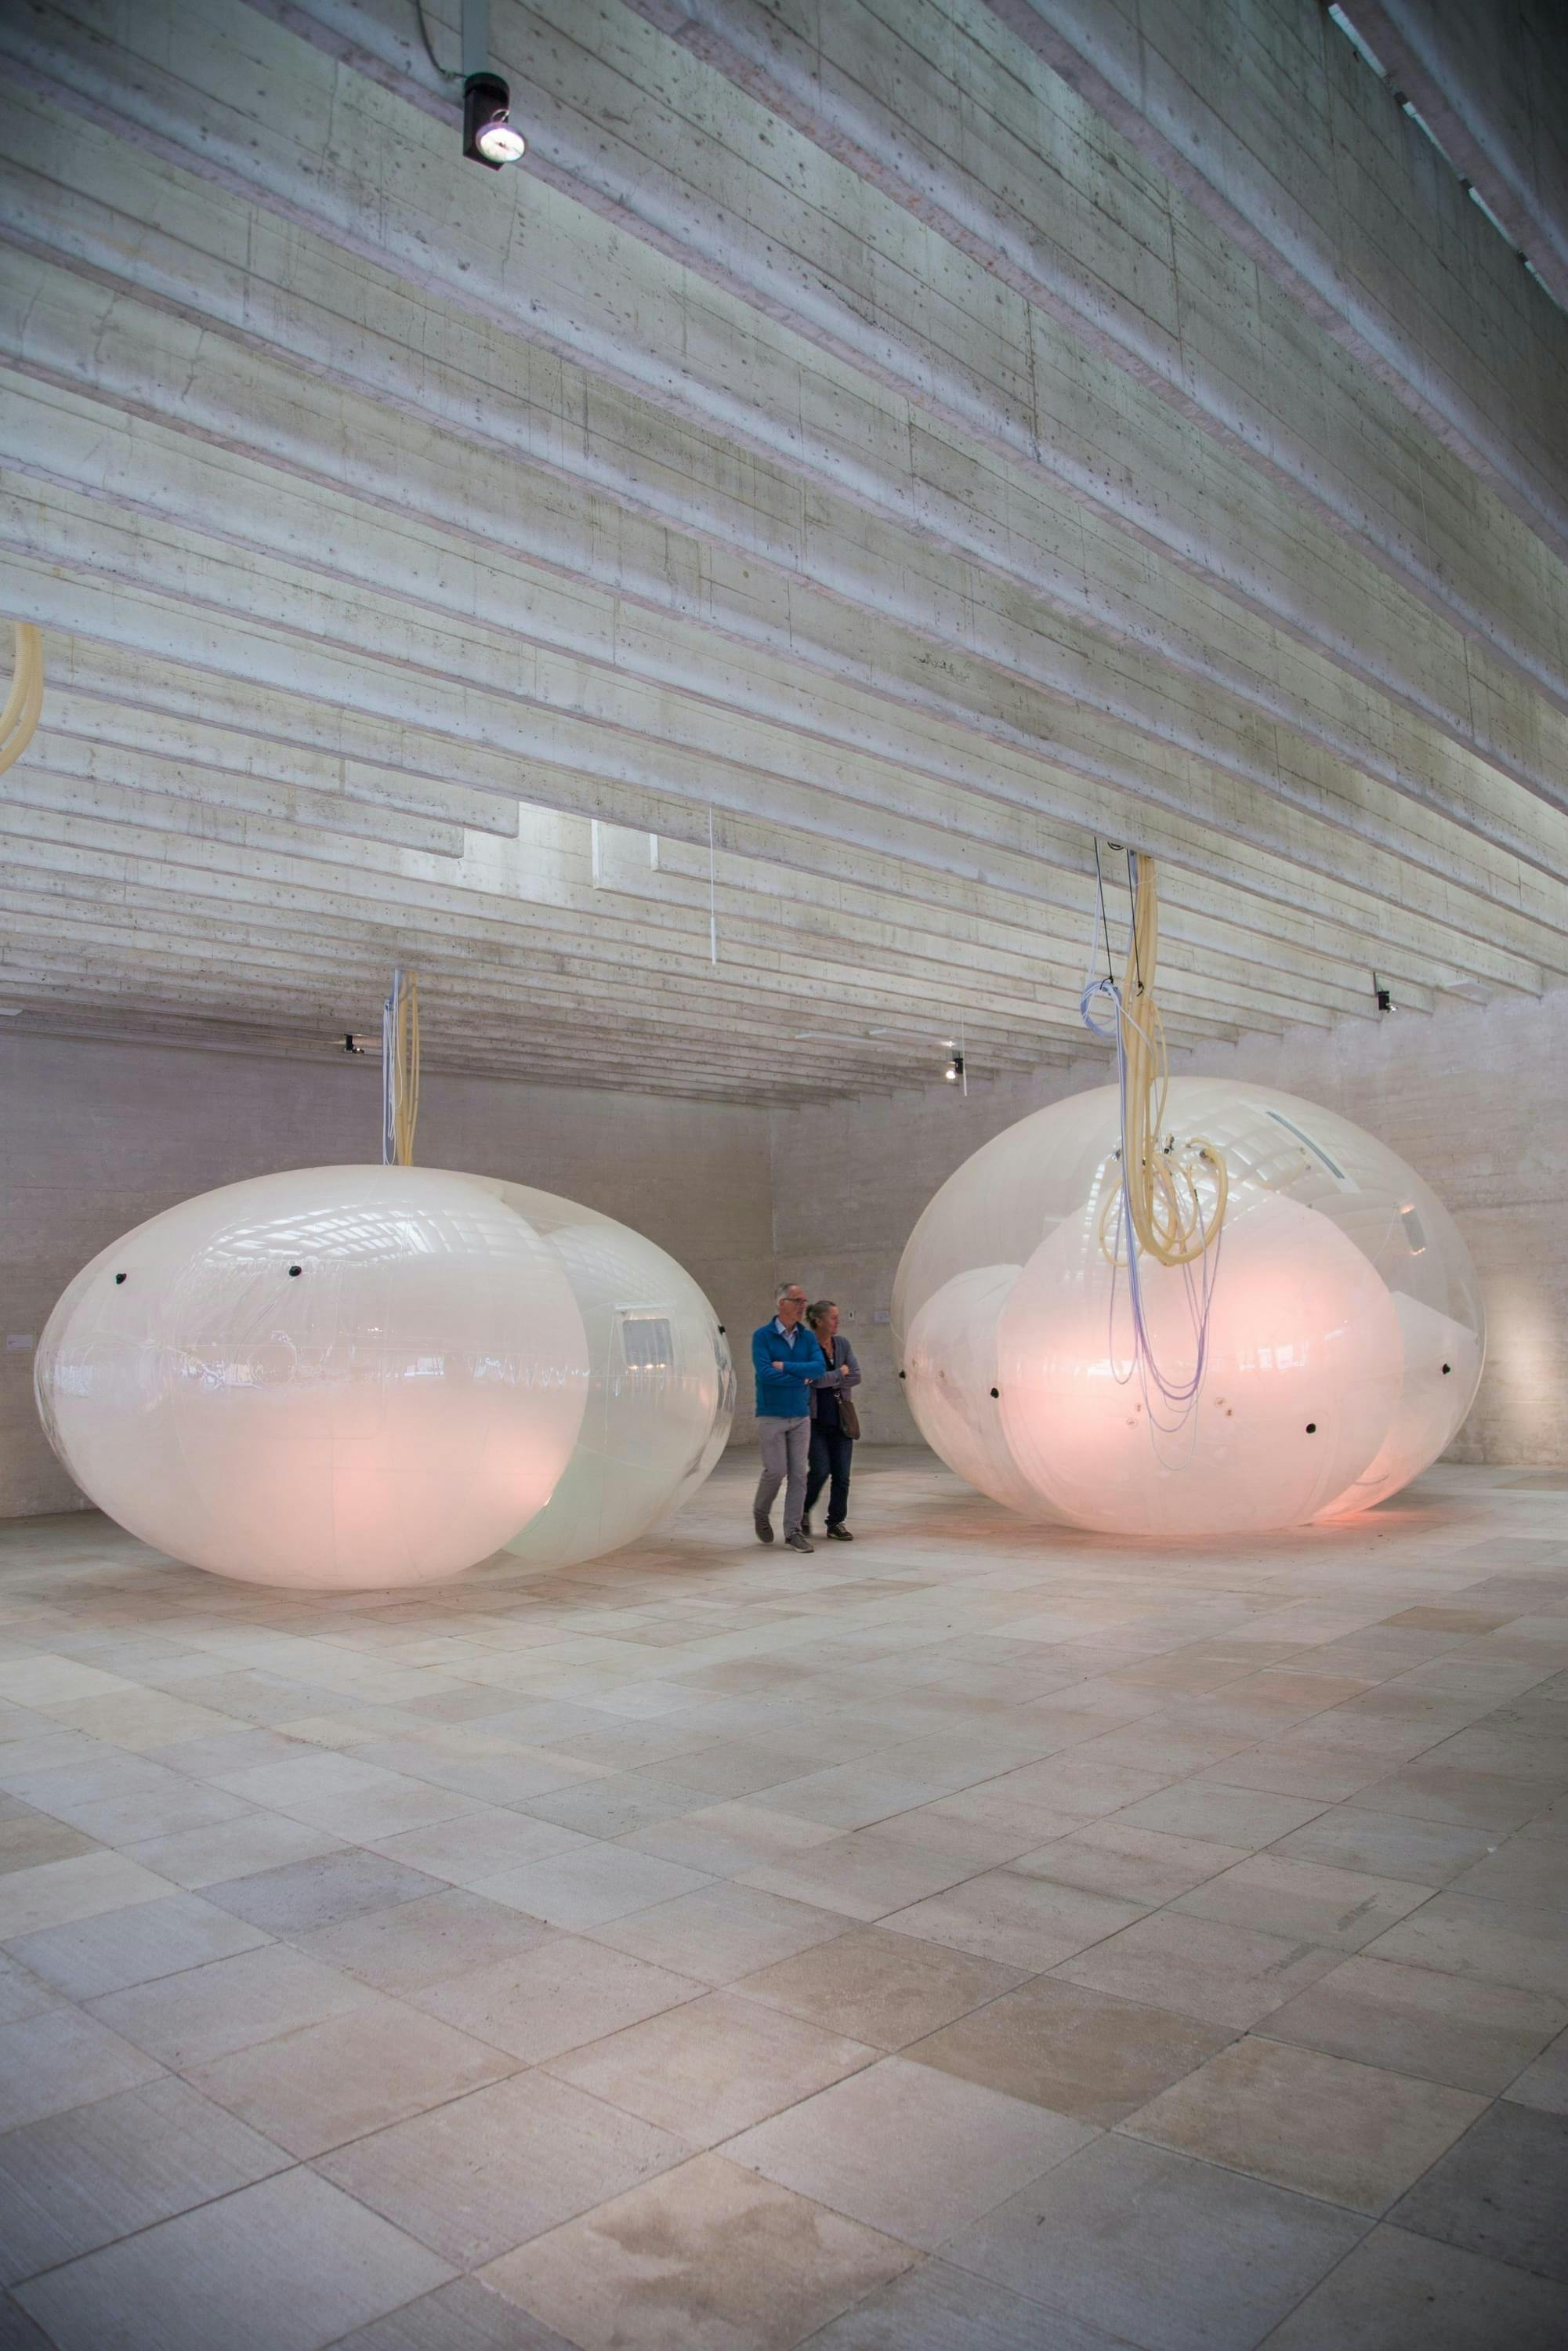 Twee mensen bekijken kunstobjecten. Het zijn een soort doorschijnende ballen met binnenin nog een paar ballen. De objecten zijn bevestigd aan het plafond.